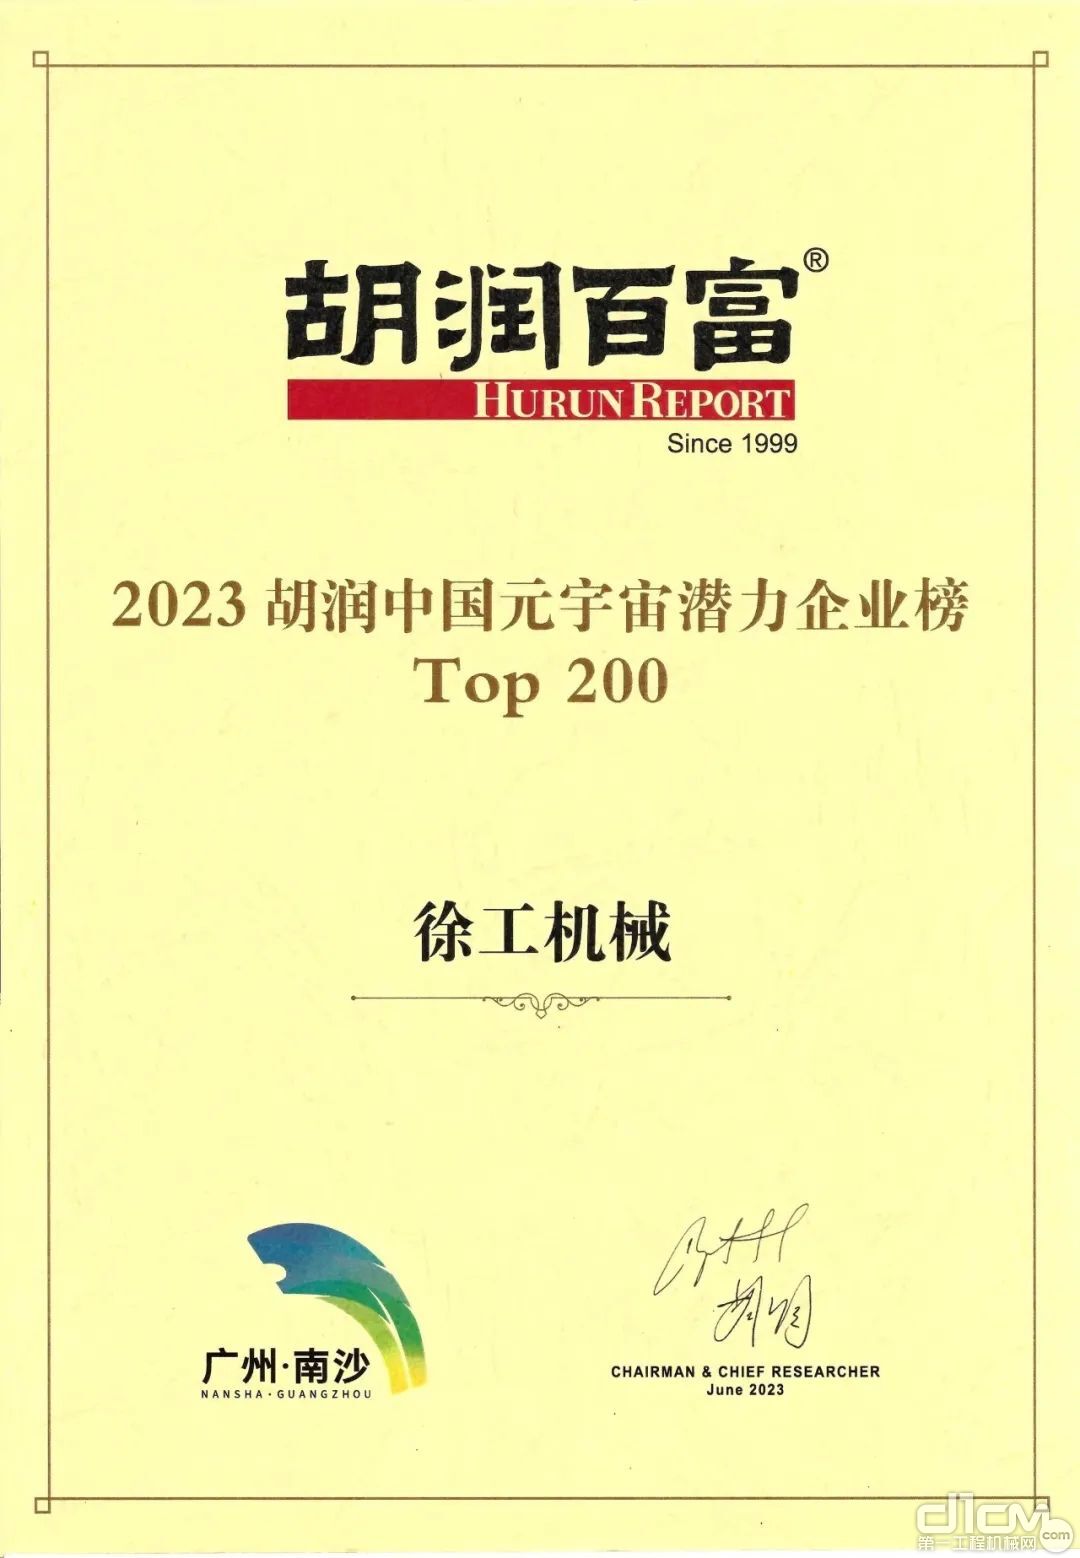 徐工机械获评《2023胡润中国元宇宙潜力企业榜》“最具潜力Top200”